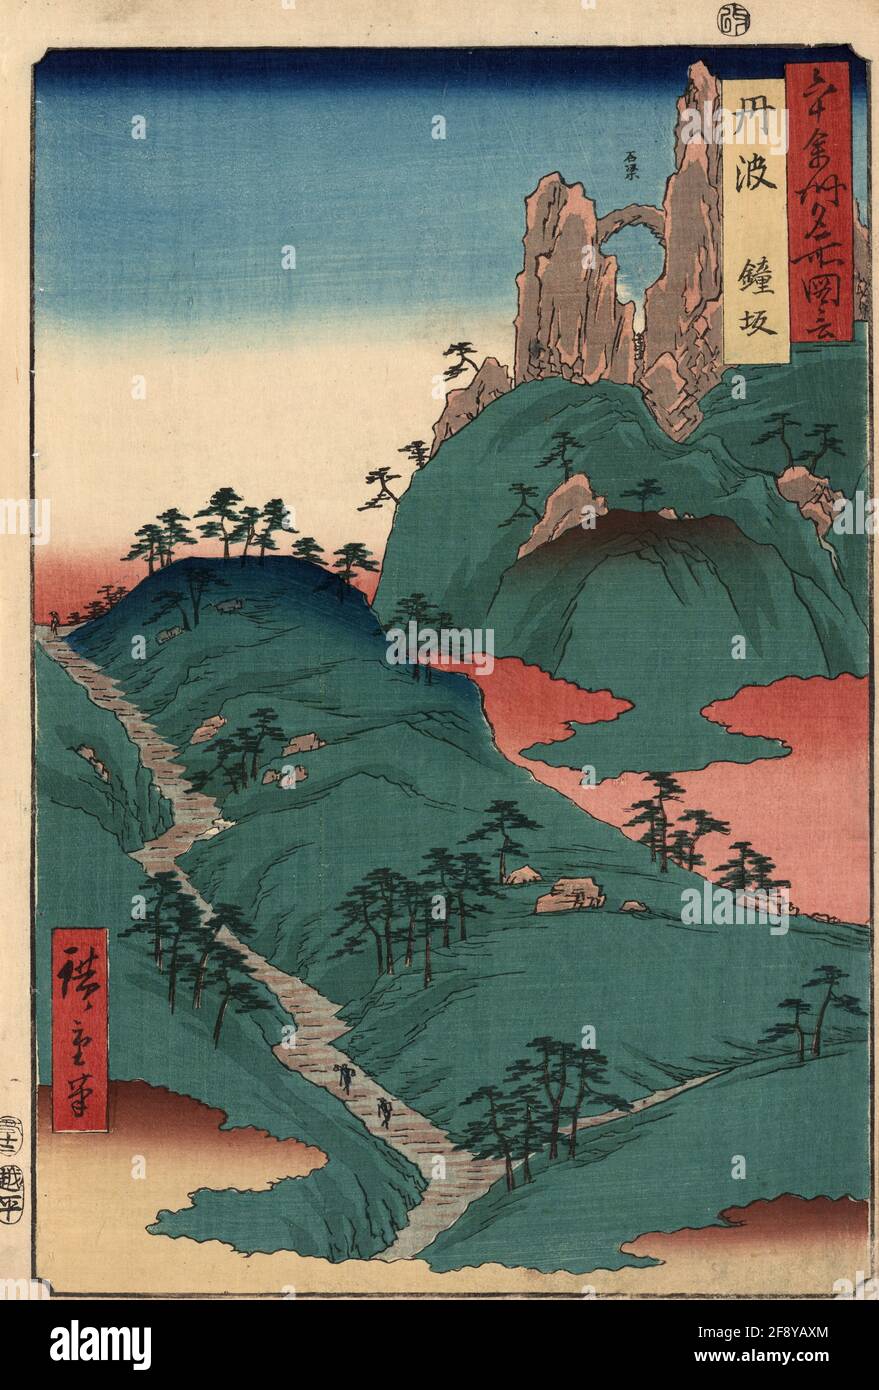 Tanba province landscape by Utagawa Hiroshige Stock Photo